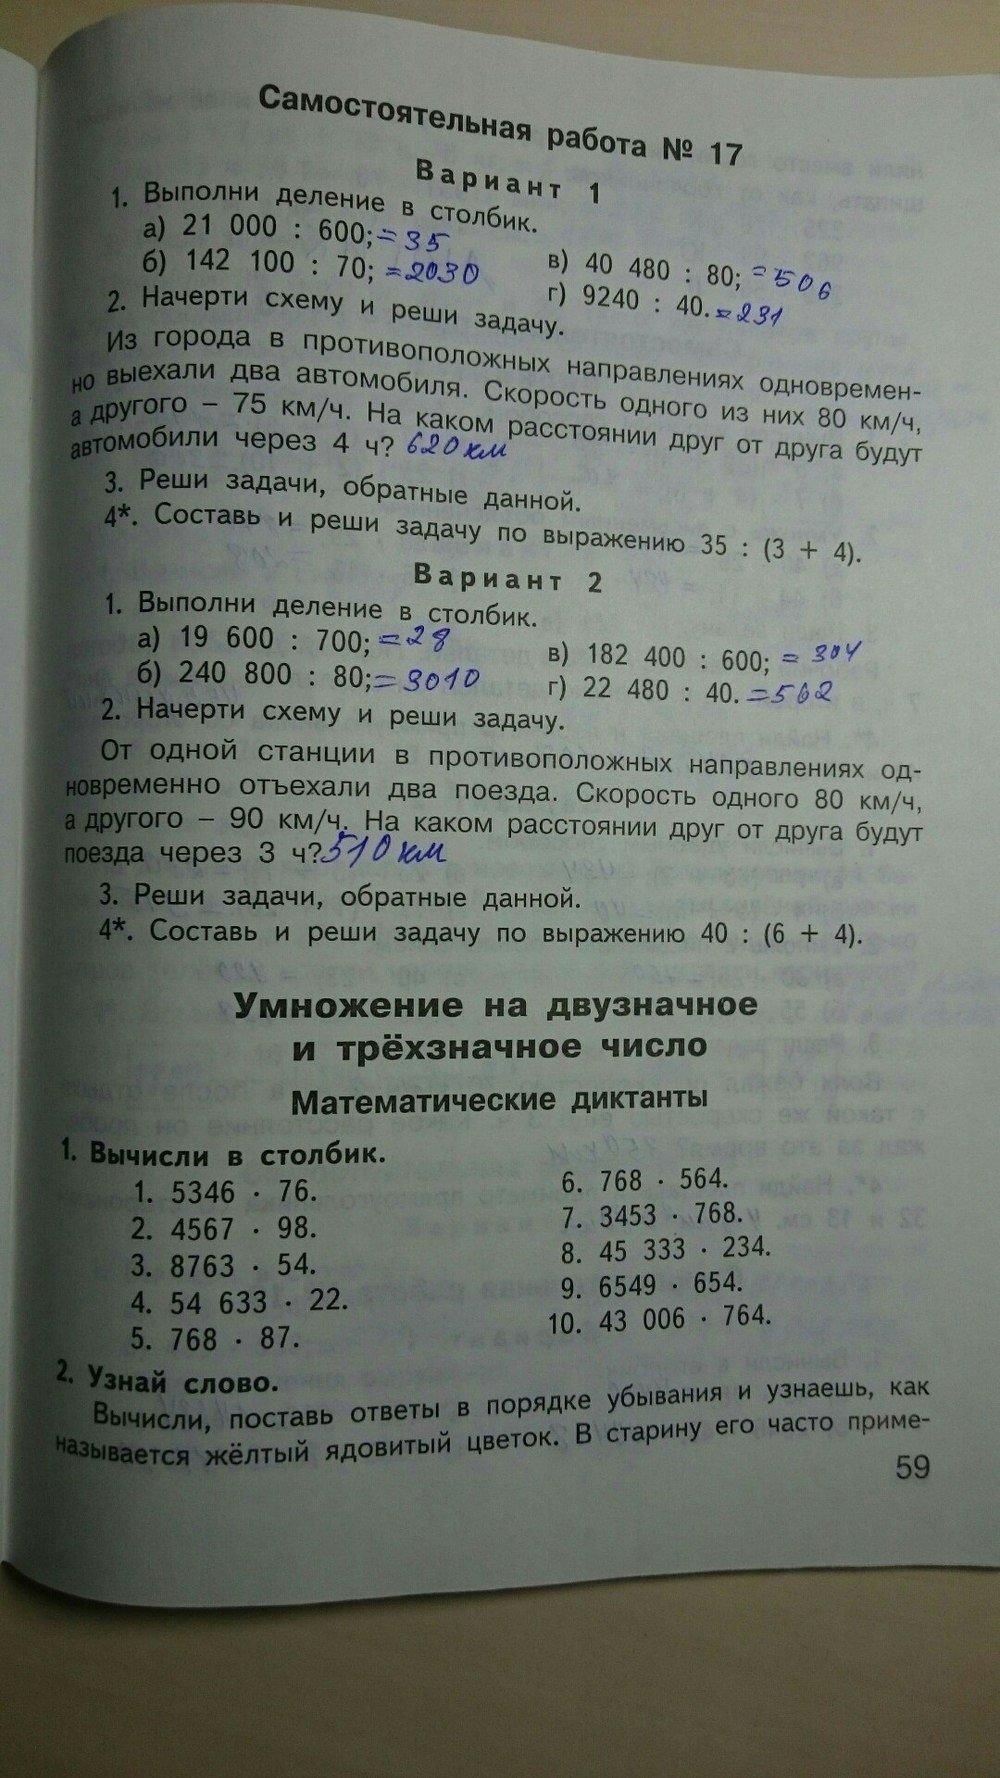 гдз 4 класс контрольно-измерительные материалы страница 59 математика Ситникова